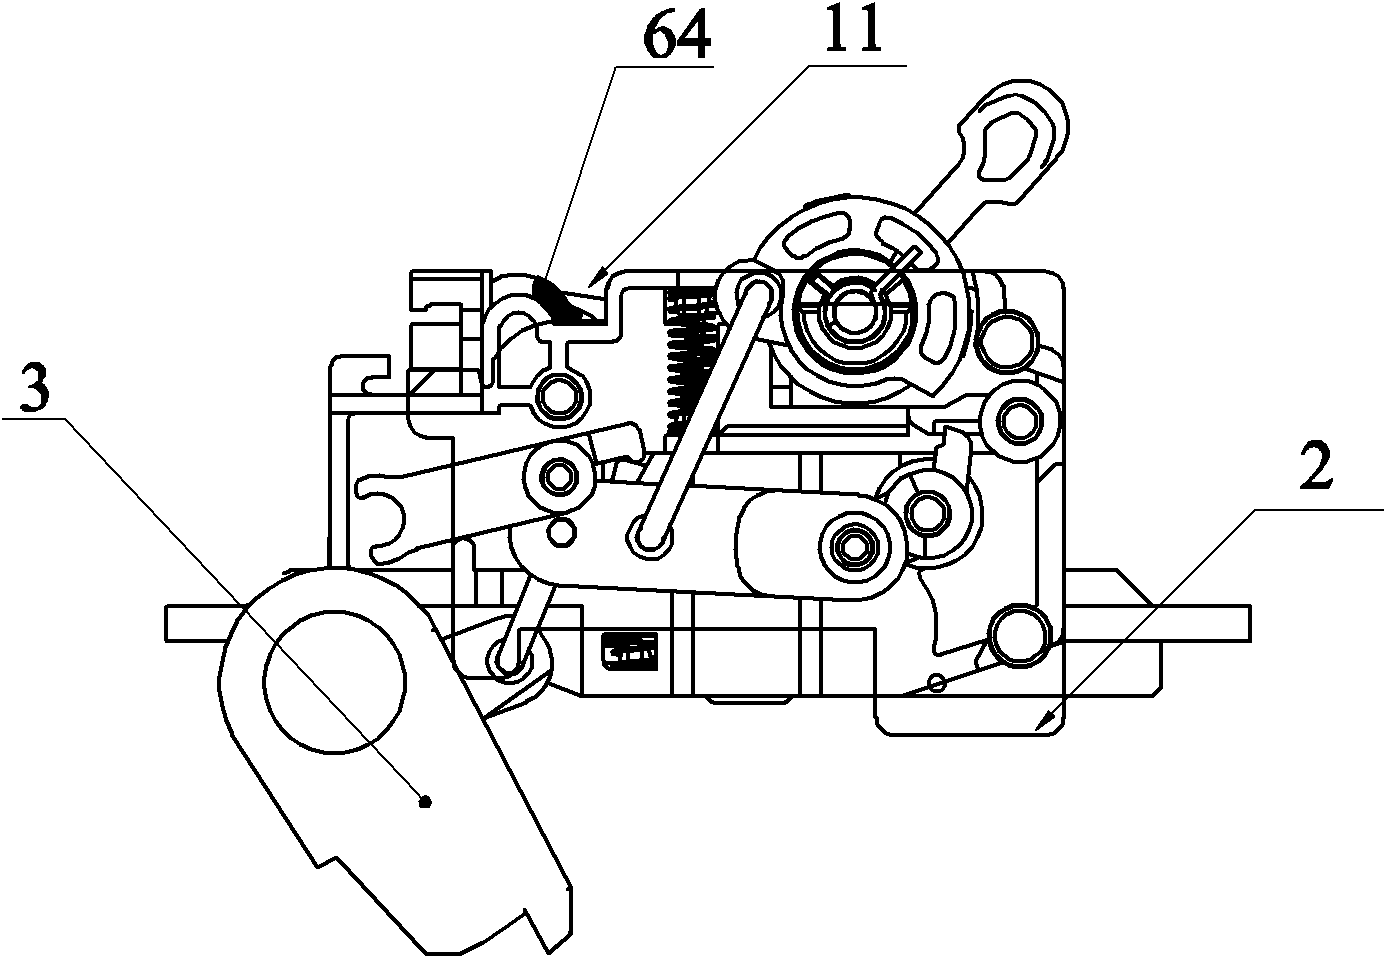 Operating mechanism of leakage circuit breaker